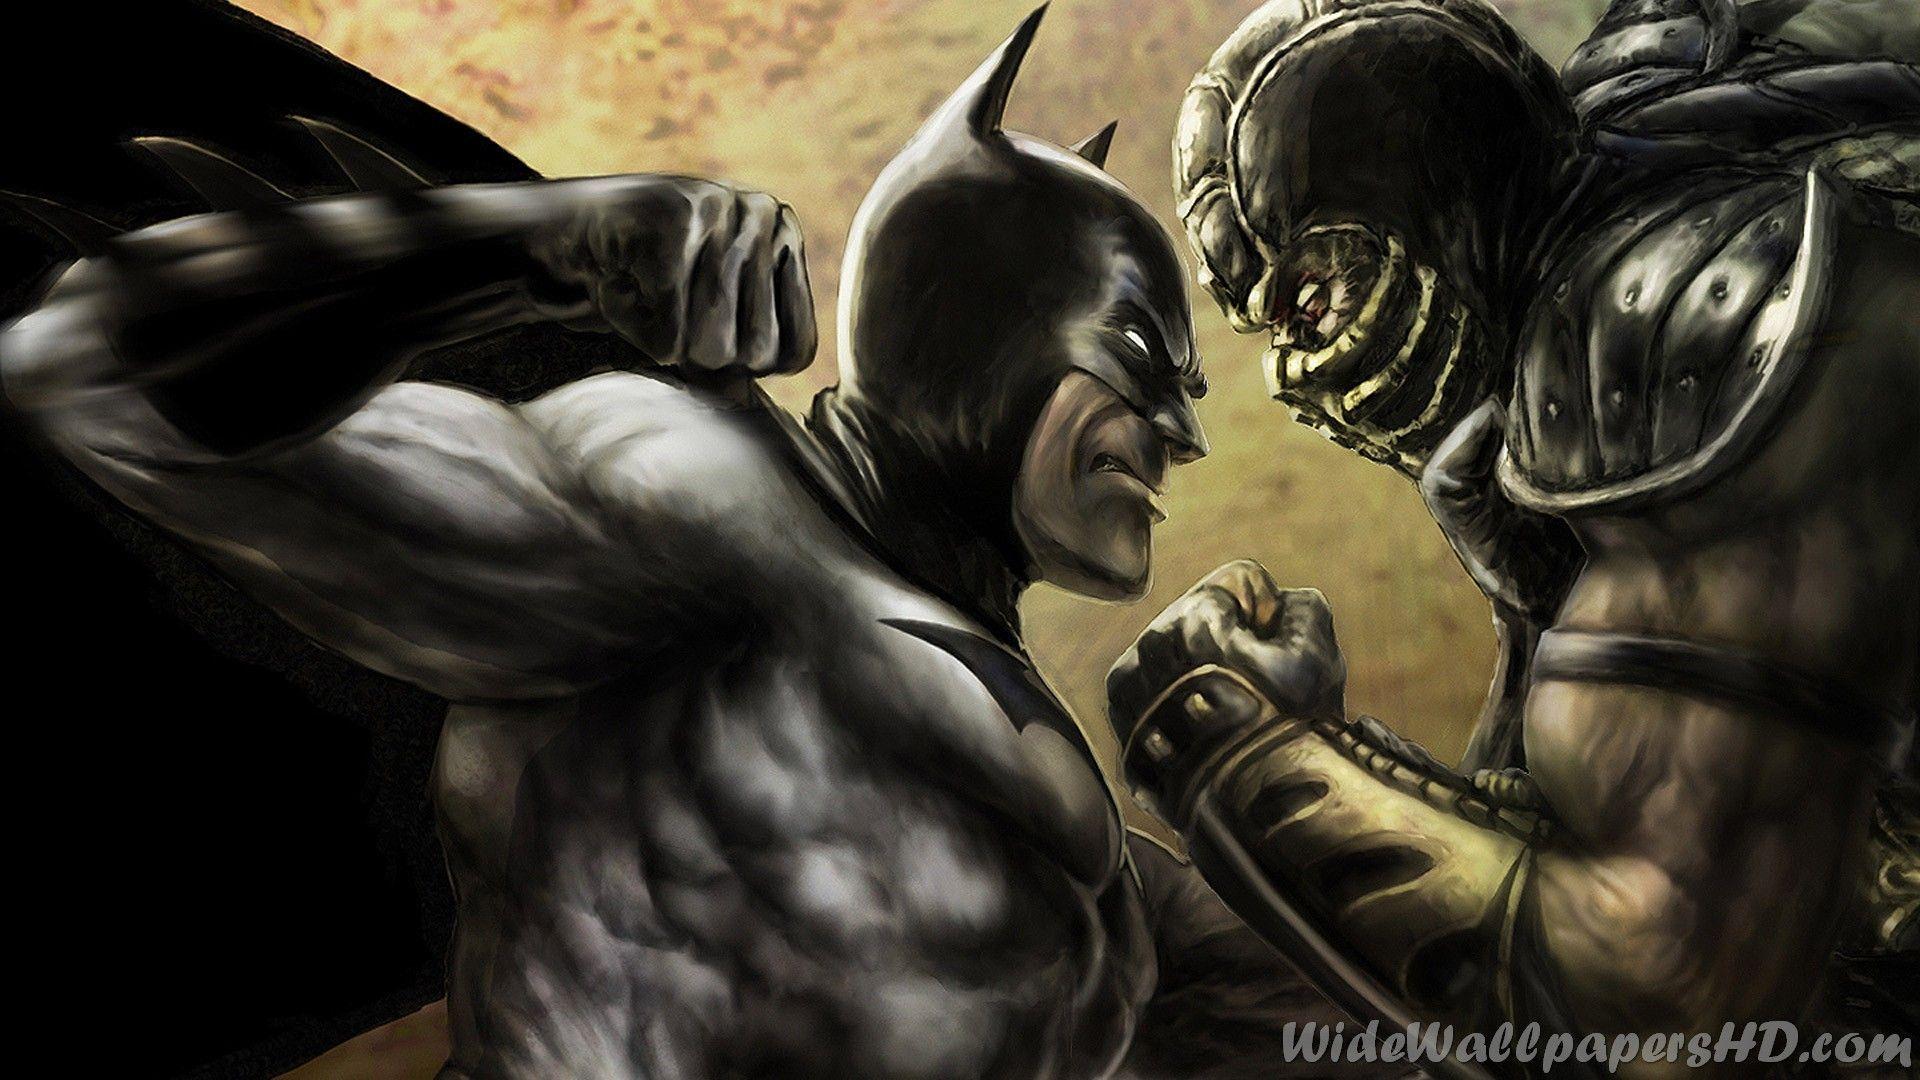 Mortal Kombat Vs. DC Universe HD Wallpaper 3 X 1080